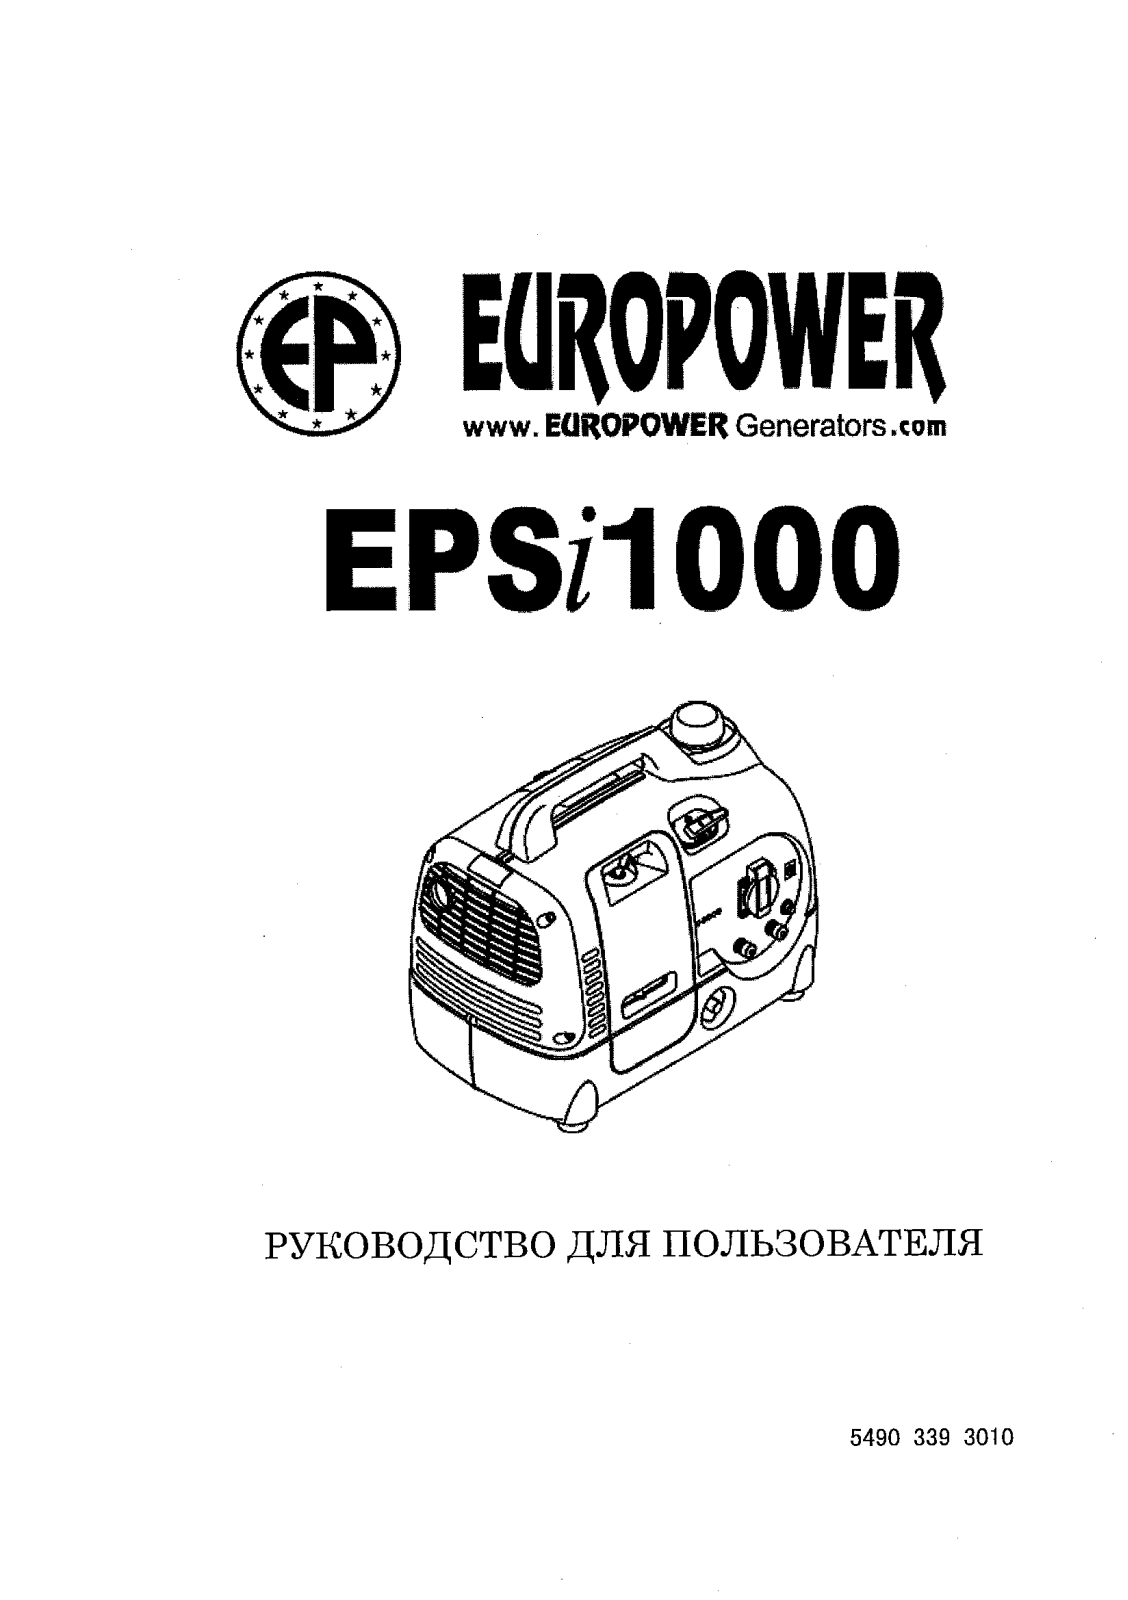 Europower EPSi 1000 User Manual